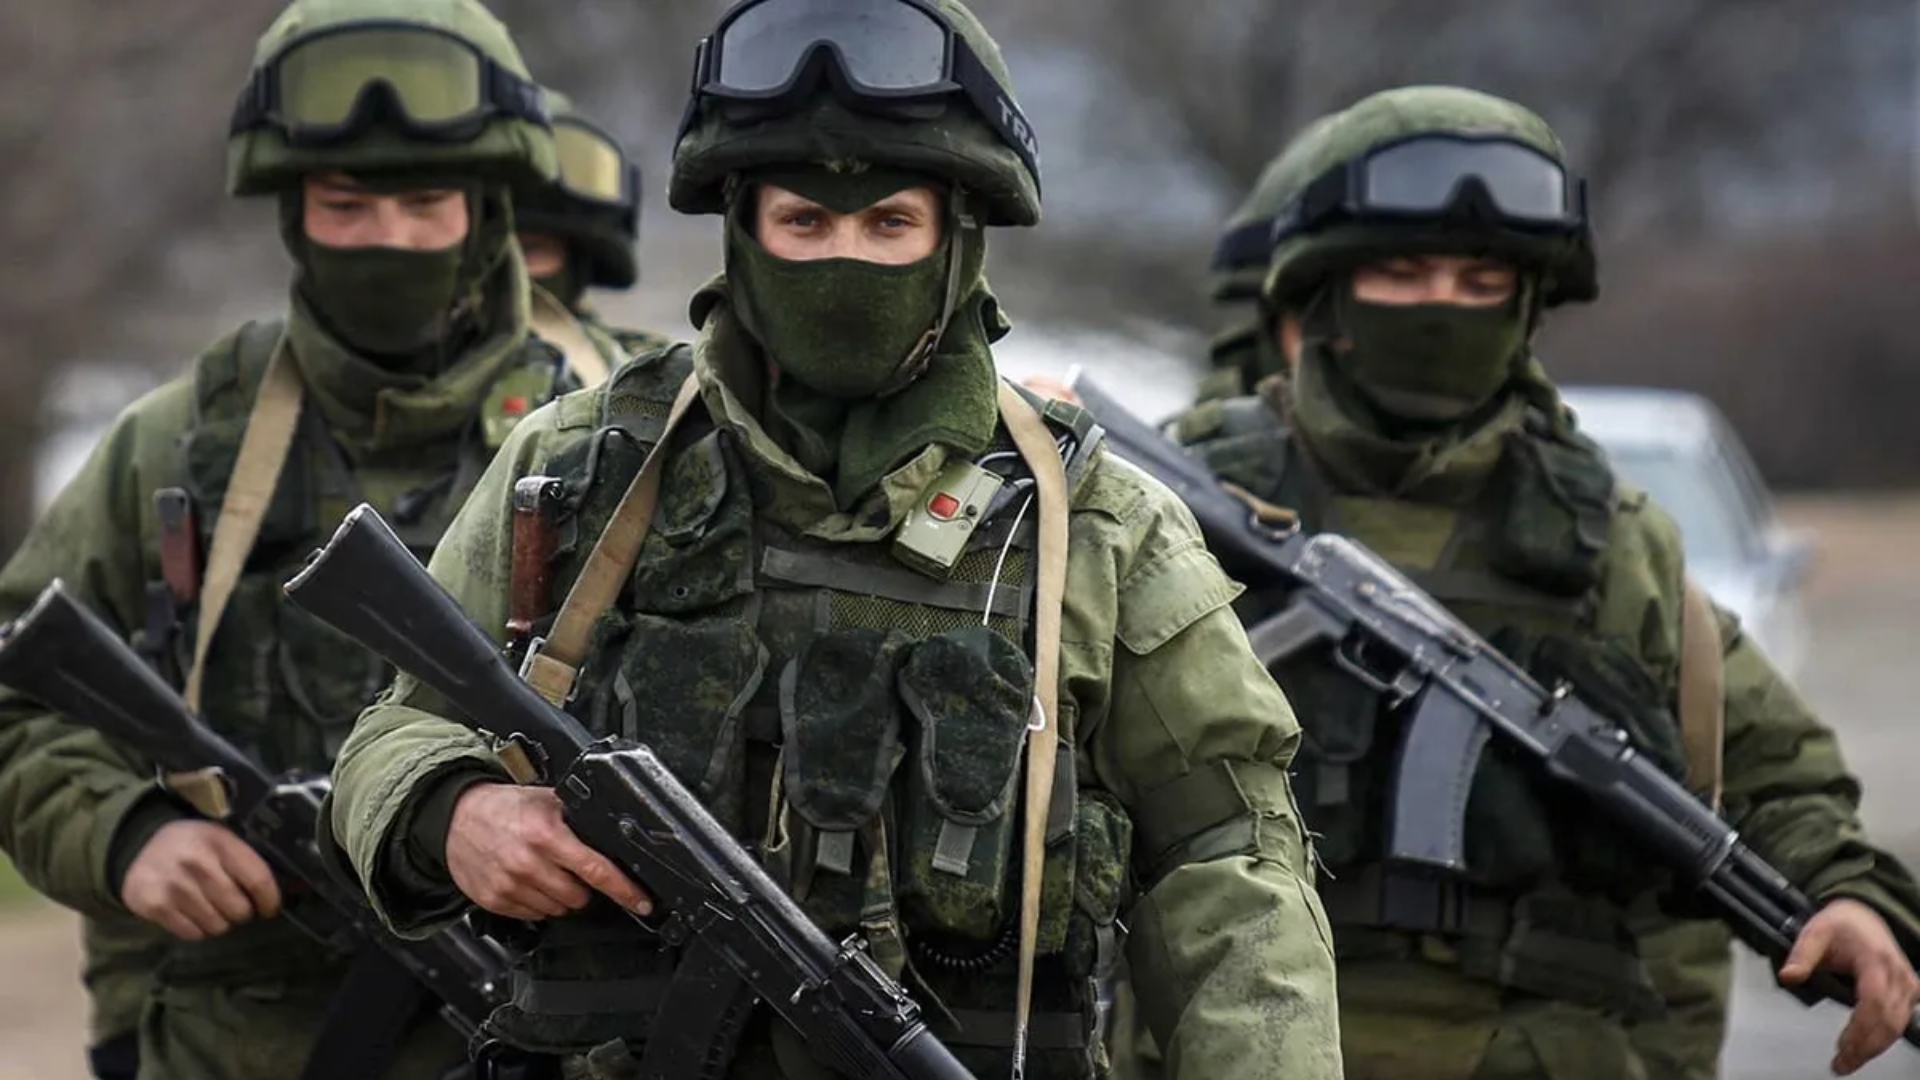 Ռուսաստանը հայտնել է իր զոհերի թվի մասին՝ պատերազմից ի վեր երկրորդ անգամ